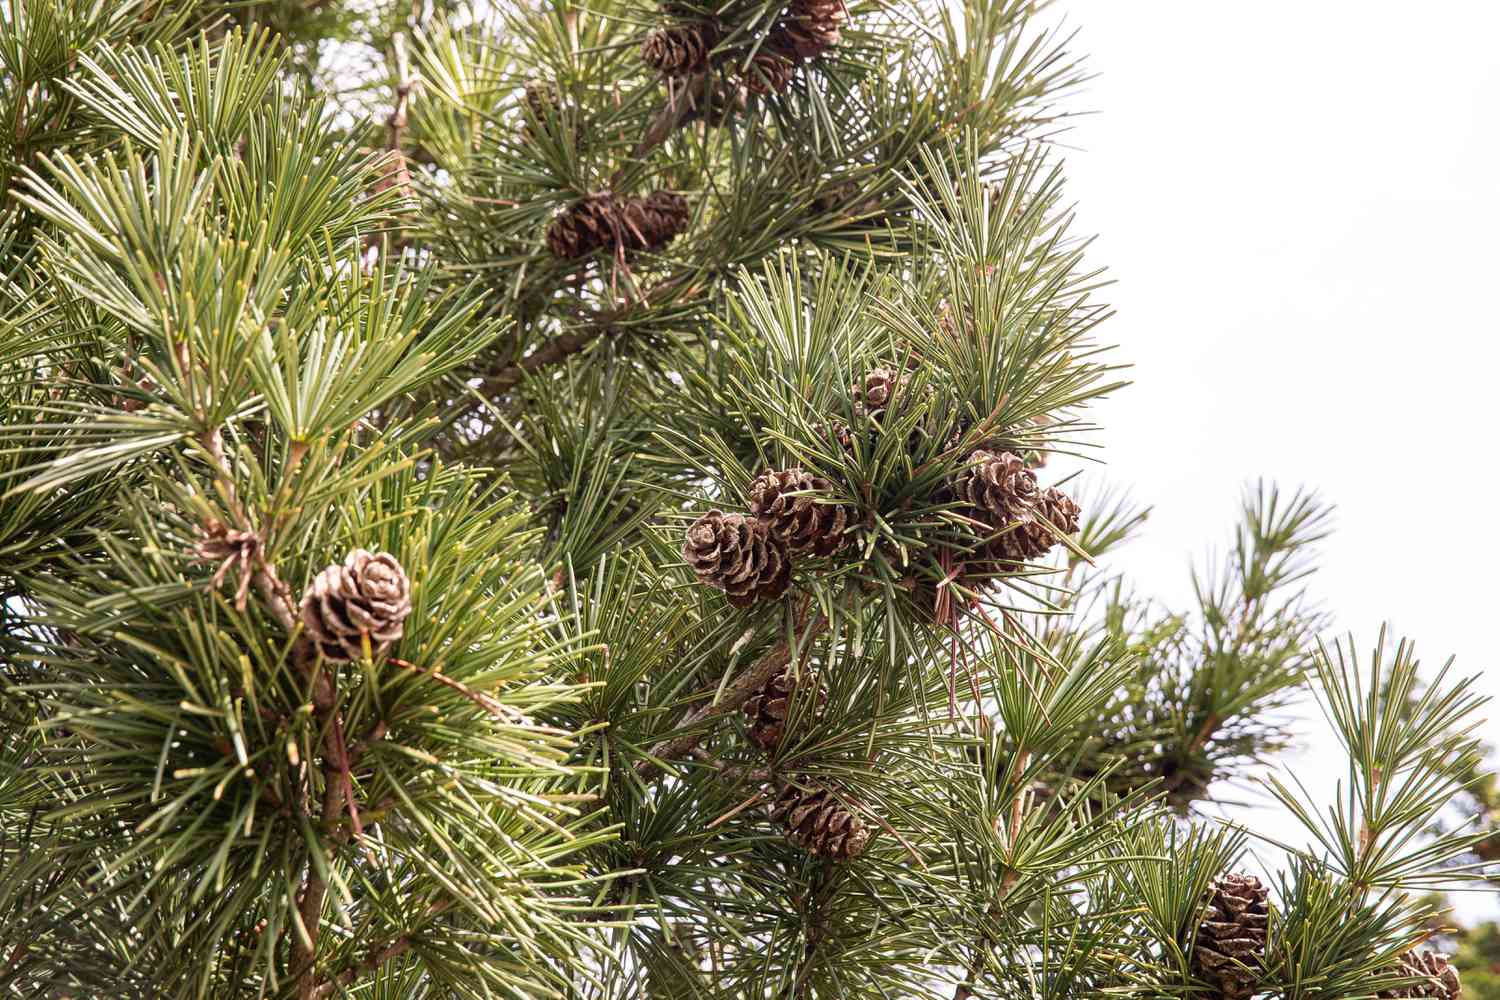 Schirmkiefernbaumzweig mit kurzen dicken Nadeln und großen Zapfen